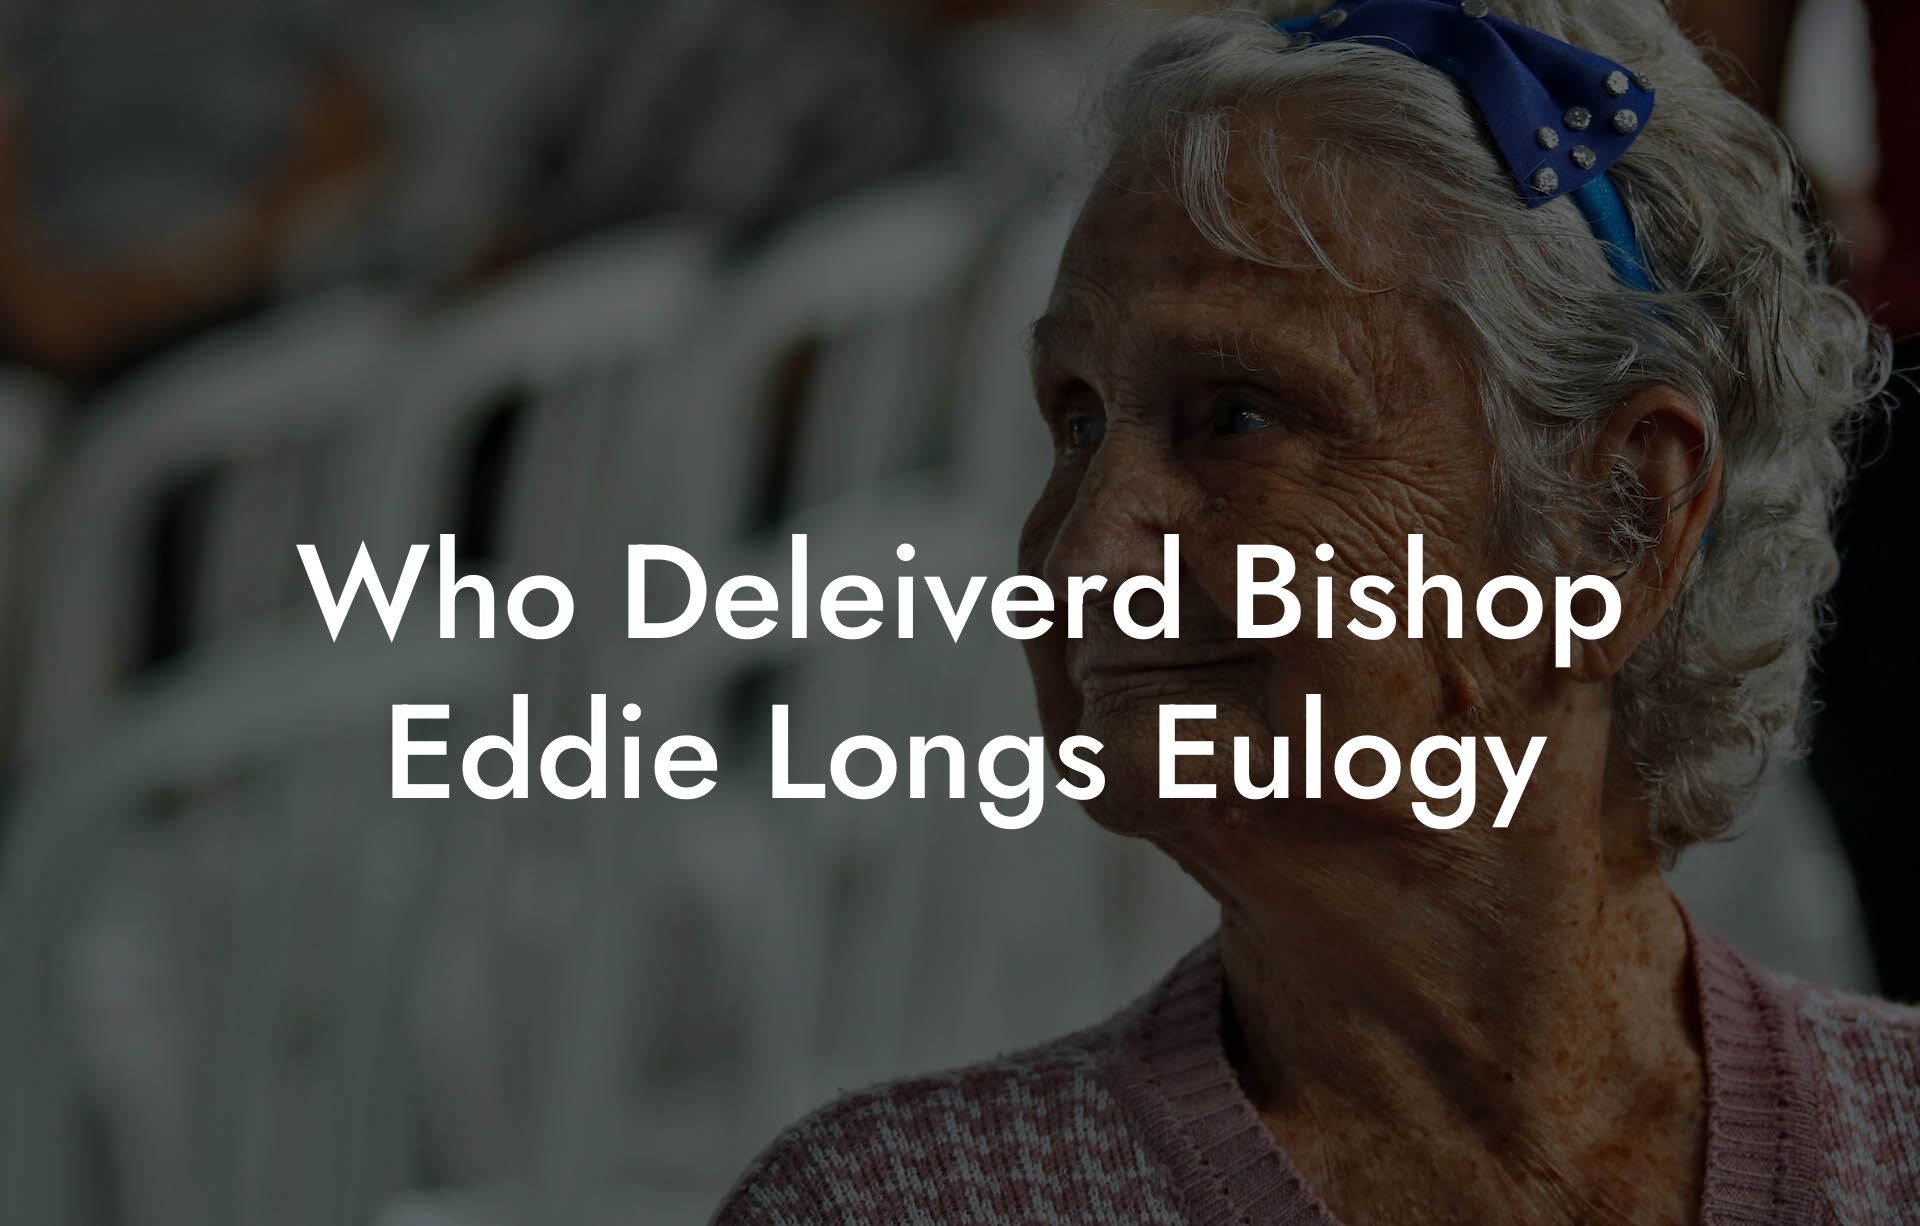 Who Deleiverd Bishop Eddie Longs Eulogy